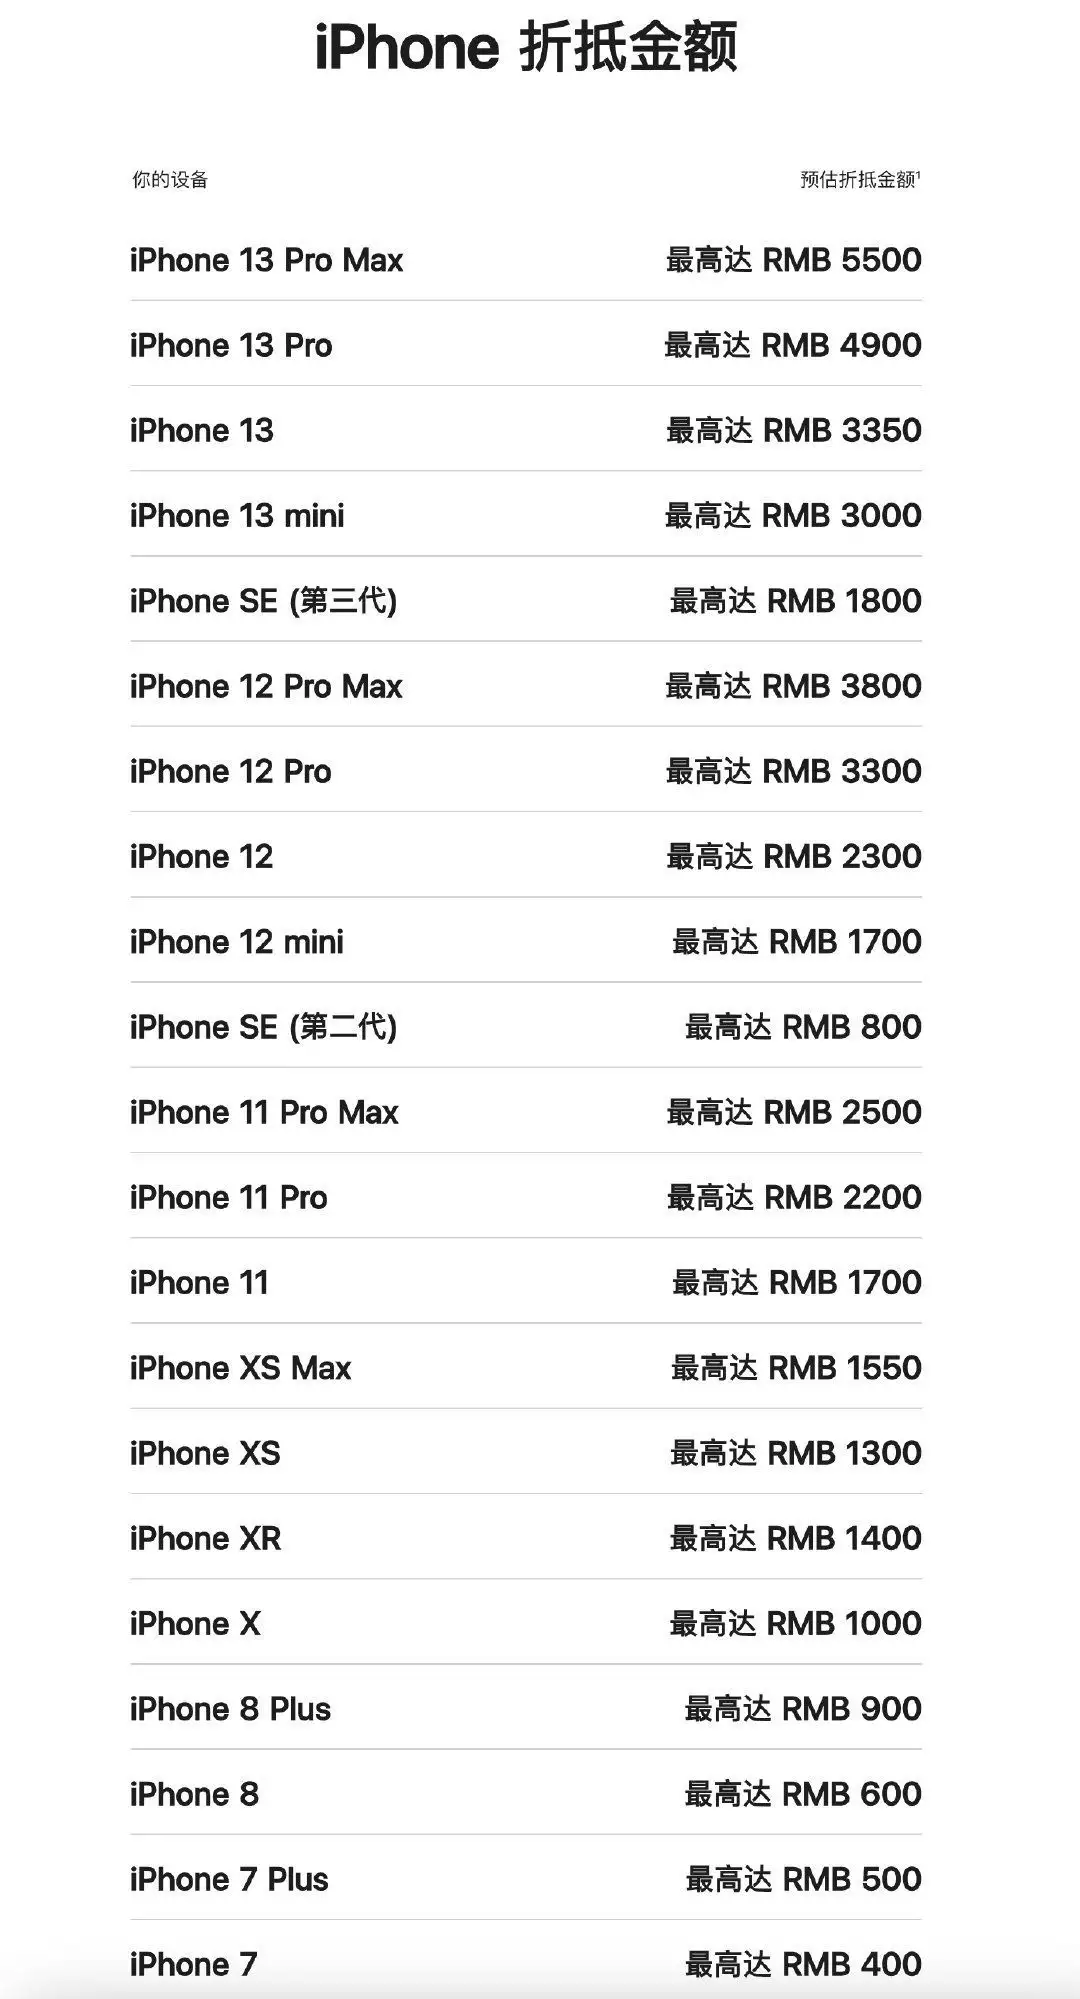 苹果官网上调折抵换购价格，iPhone 13 Pro Max 最高可抵 5500 元张紫妍被潜规则后轻生！同时“招待”4位客人，遗书揭露韩娱黑暗（苹果折抵换购会降价吗）